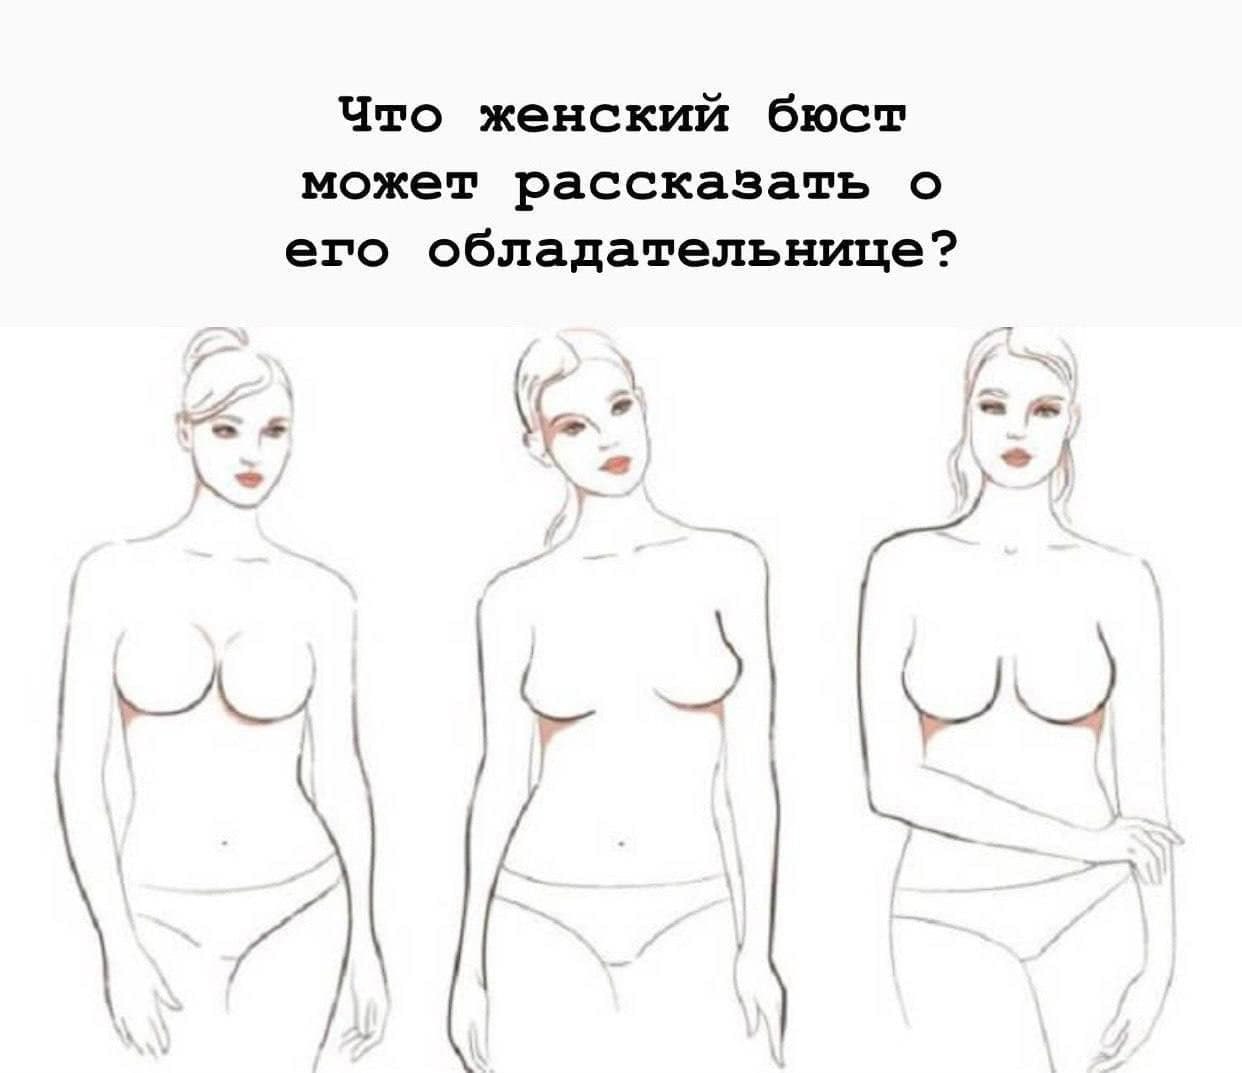 какая бывает форма груди у женщин фото 69